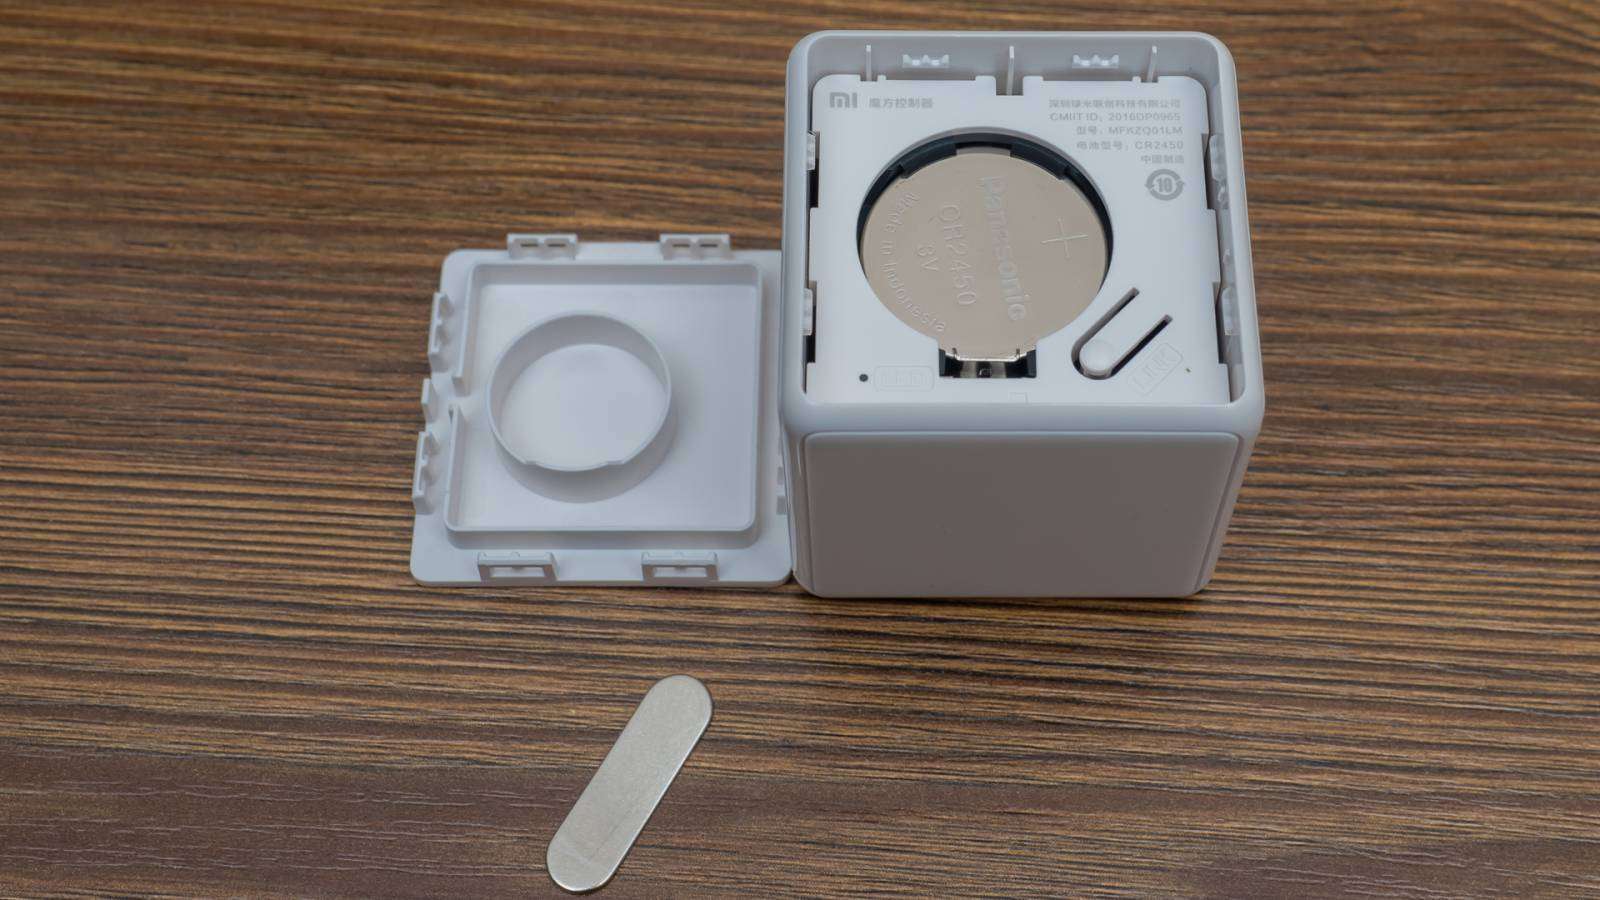 GearBest: Контролер управления умным домом Xiaomi Mi Magic Cube Controller - полный обзор, все возможности